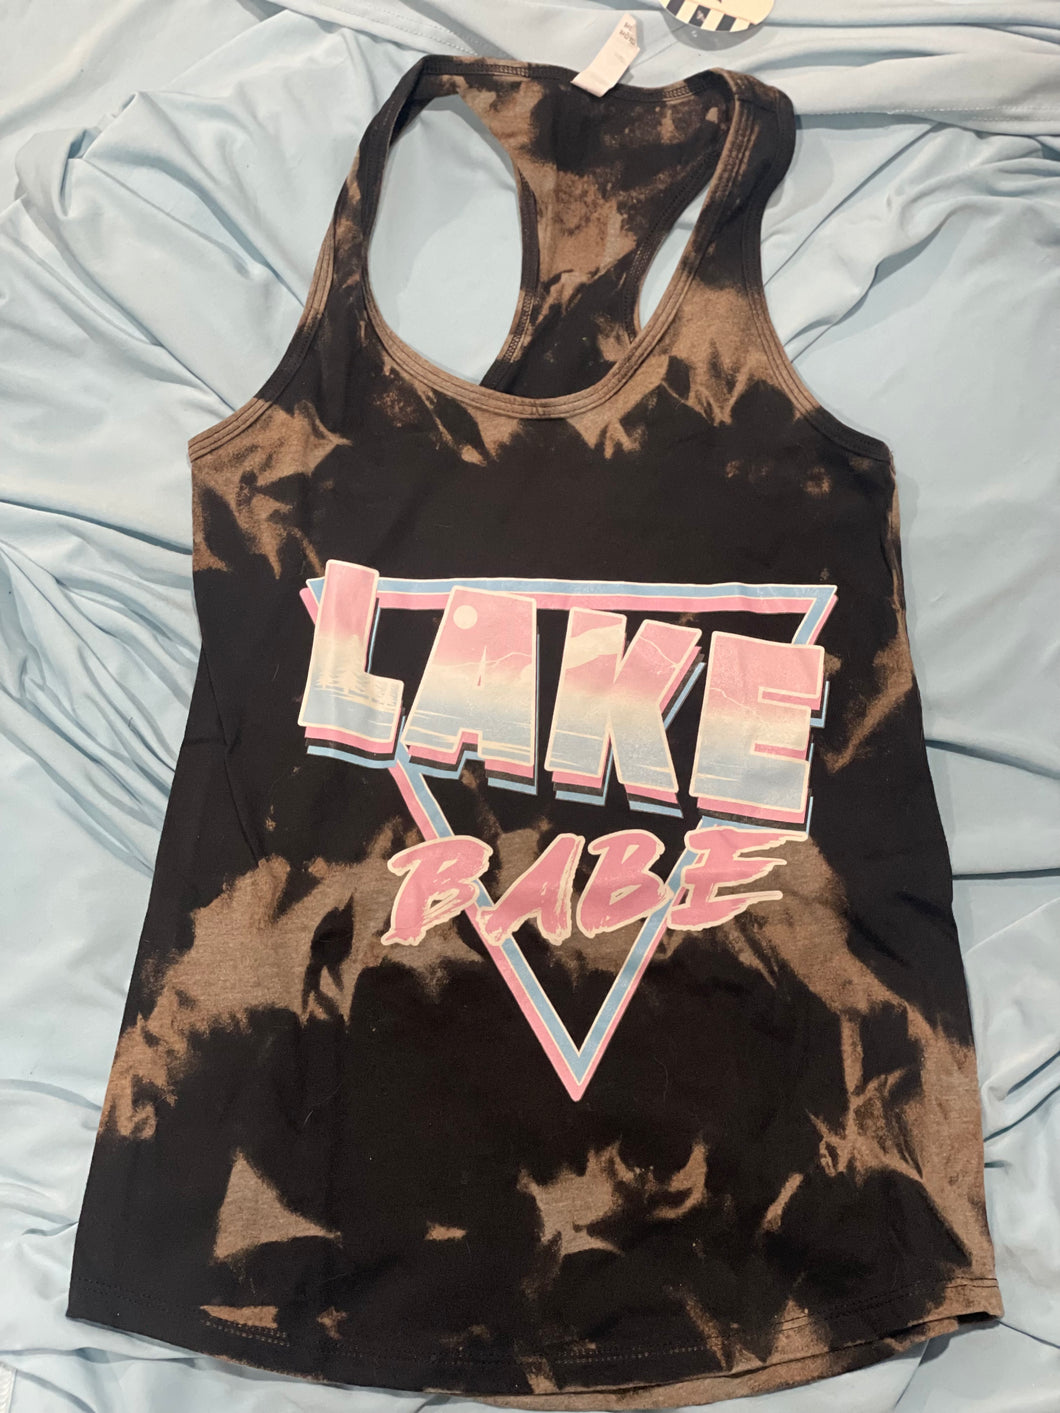 Lake babe tank